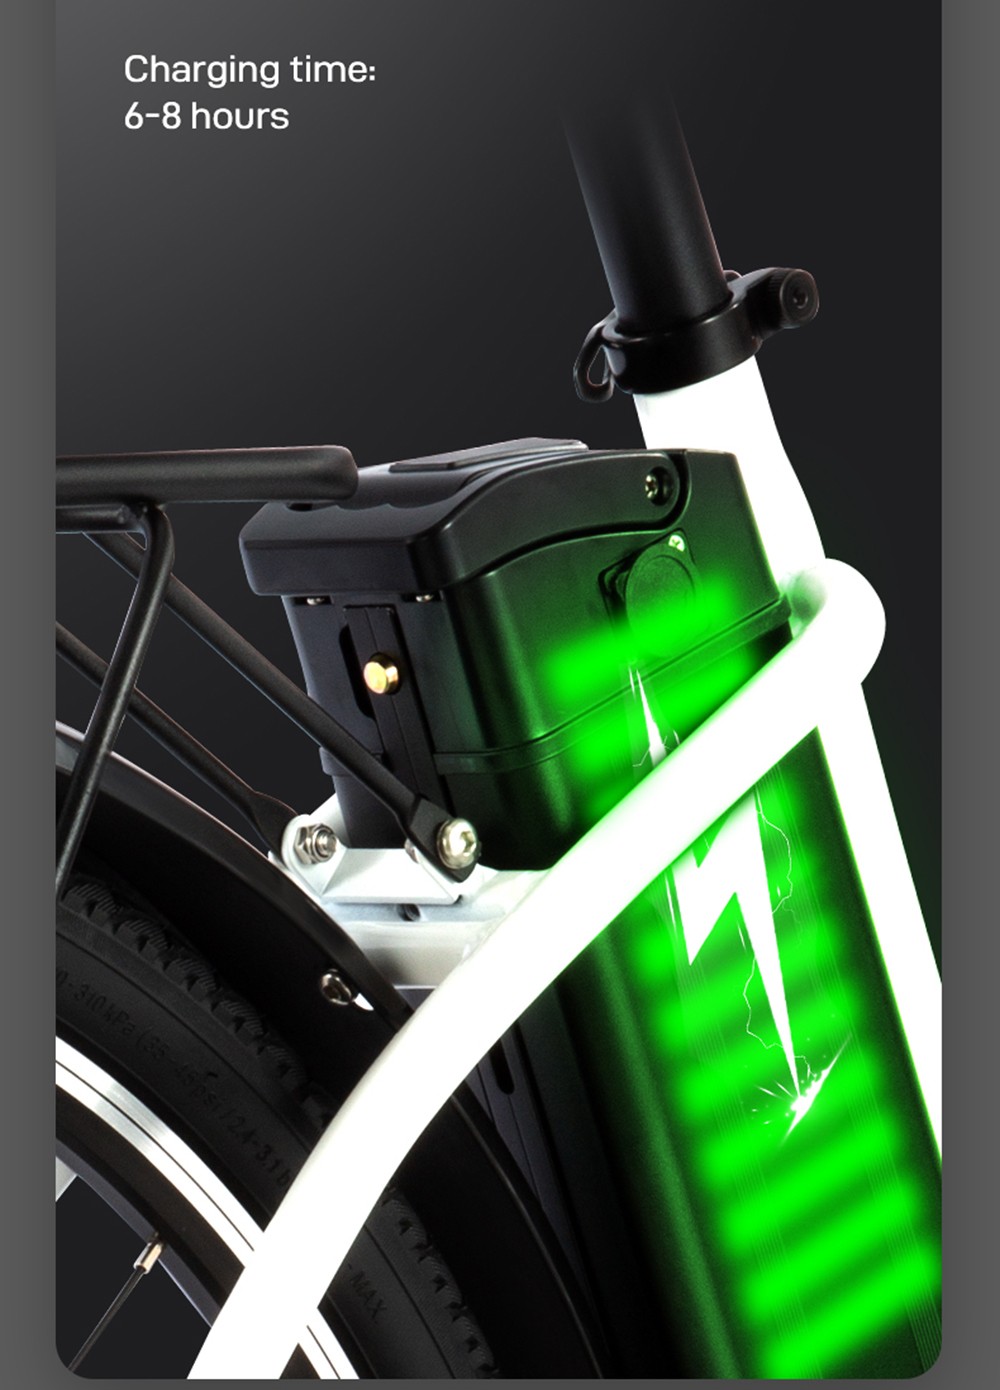 DYU C6 új verzió elektromos kerékpár 350W motor 36V 12.5AH - fehér